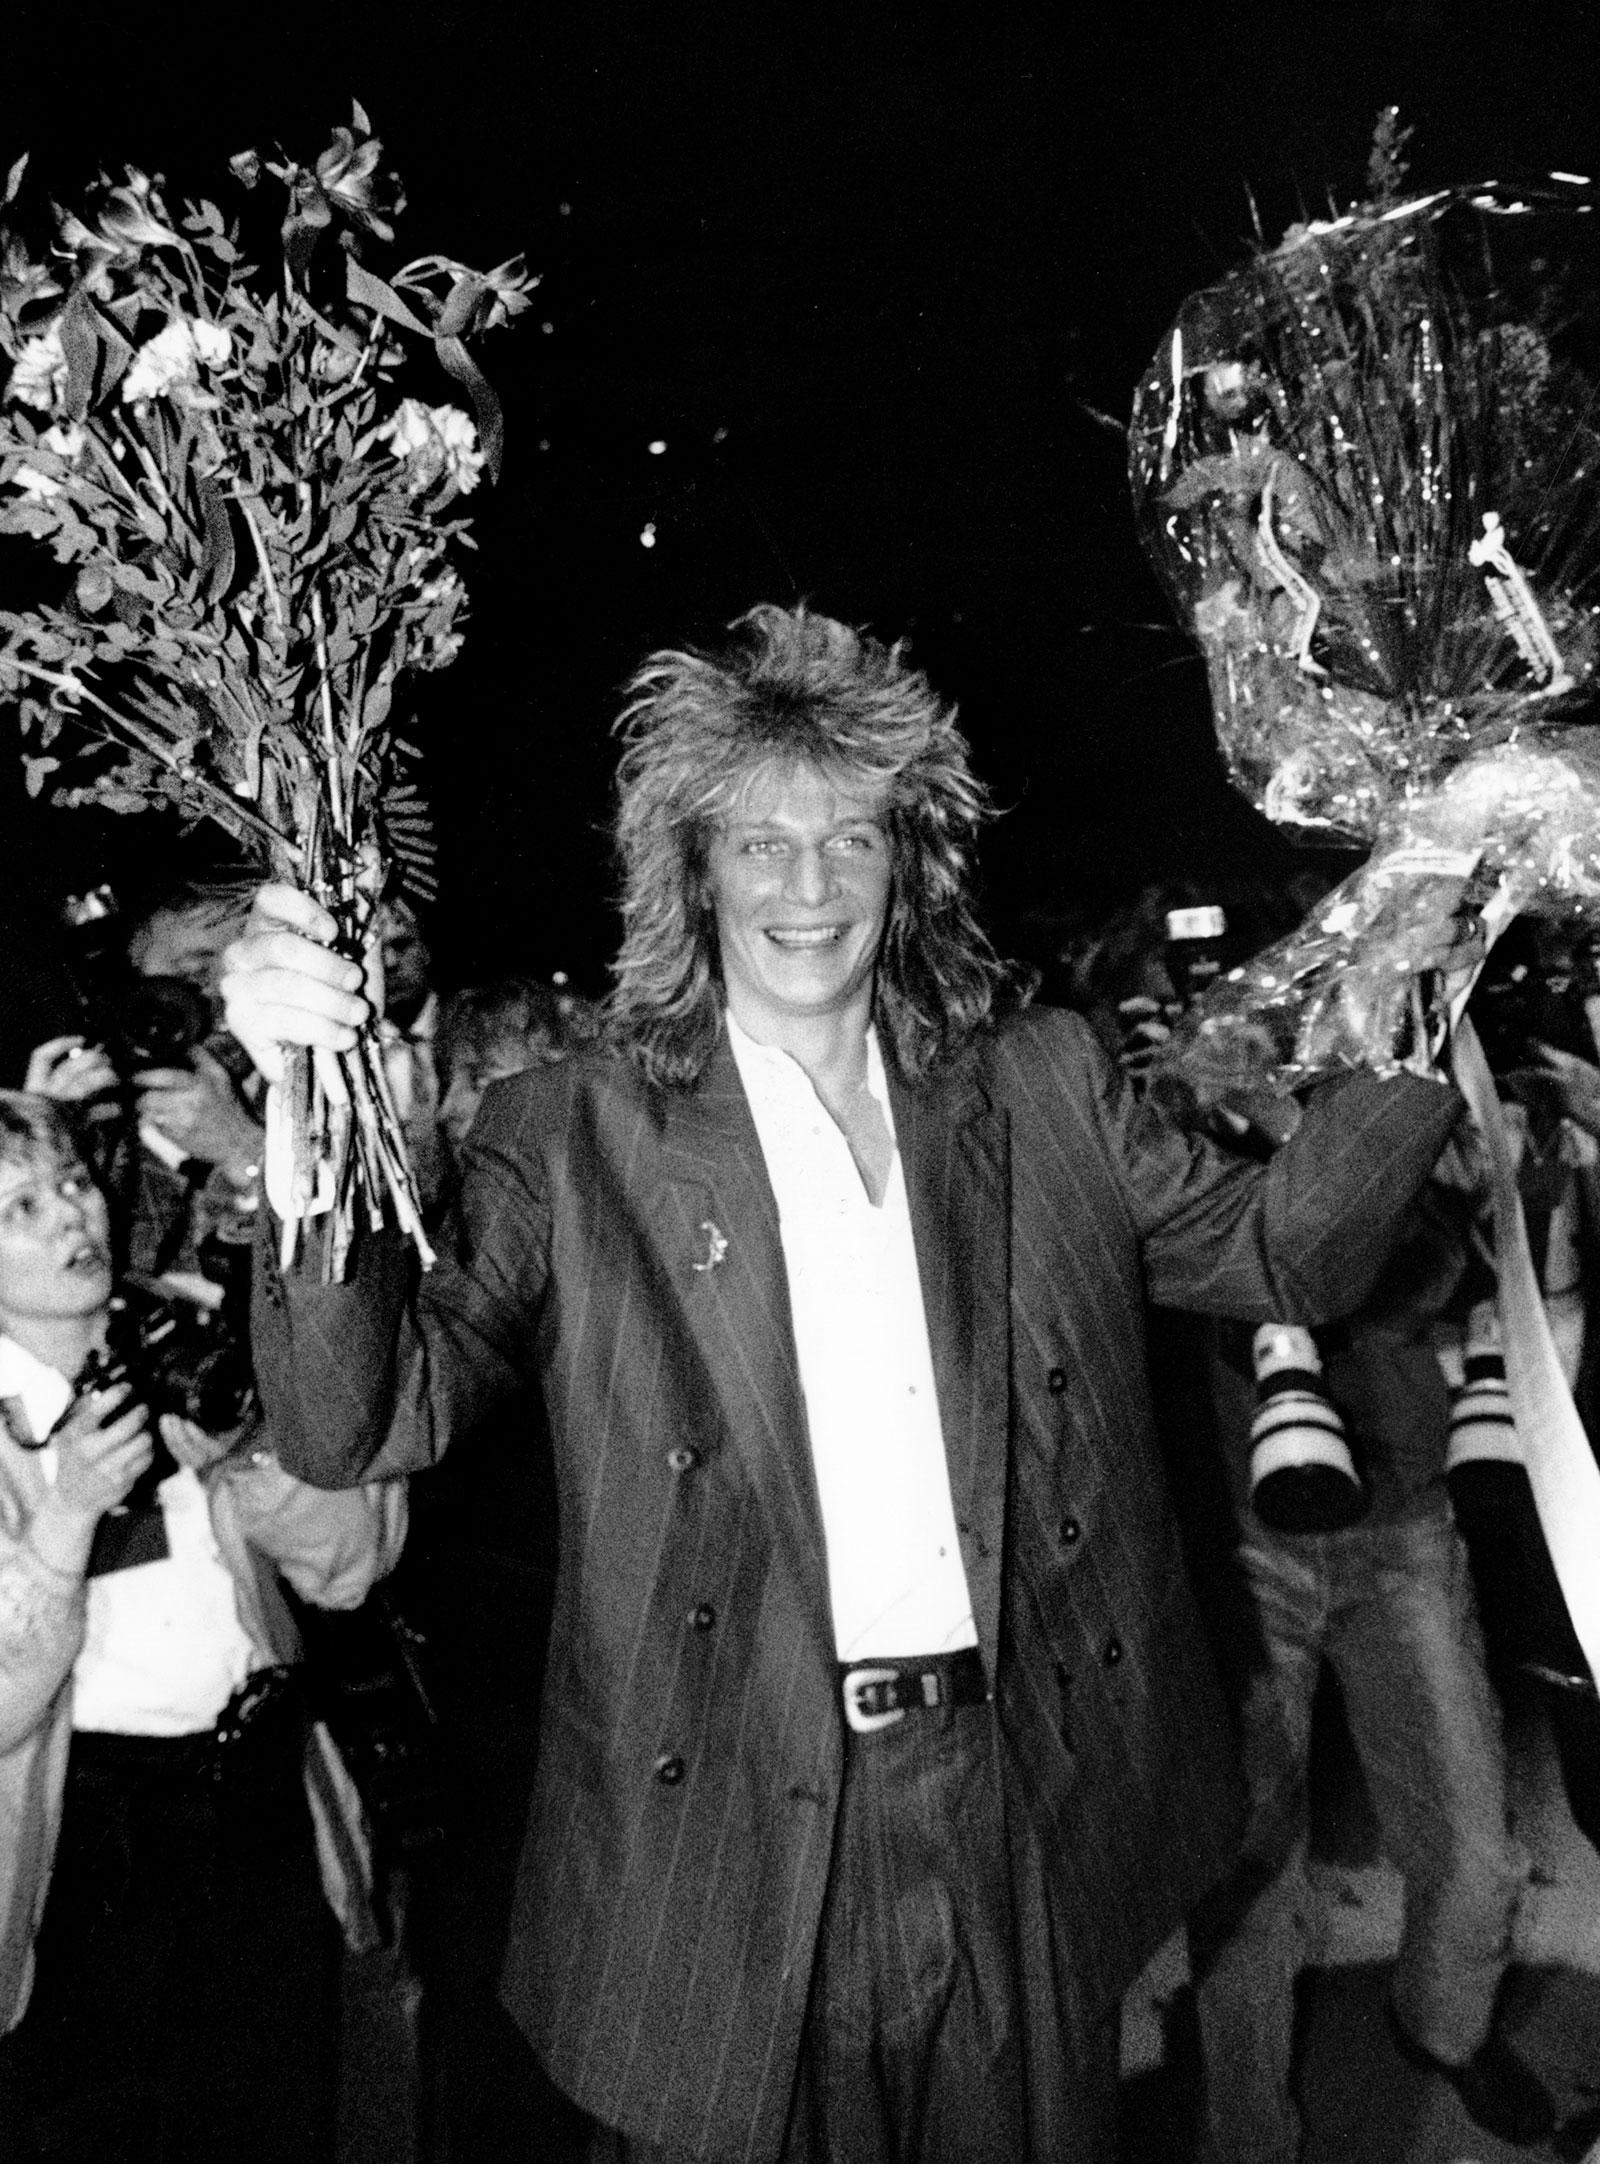 1989 Tommy Nilsson vinner Melodifestivalen med ”En dag”.